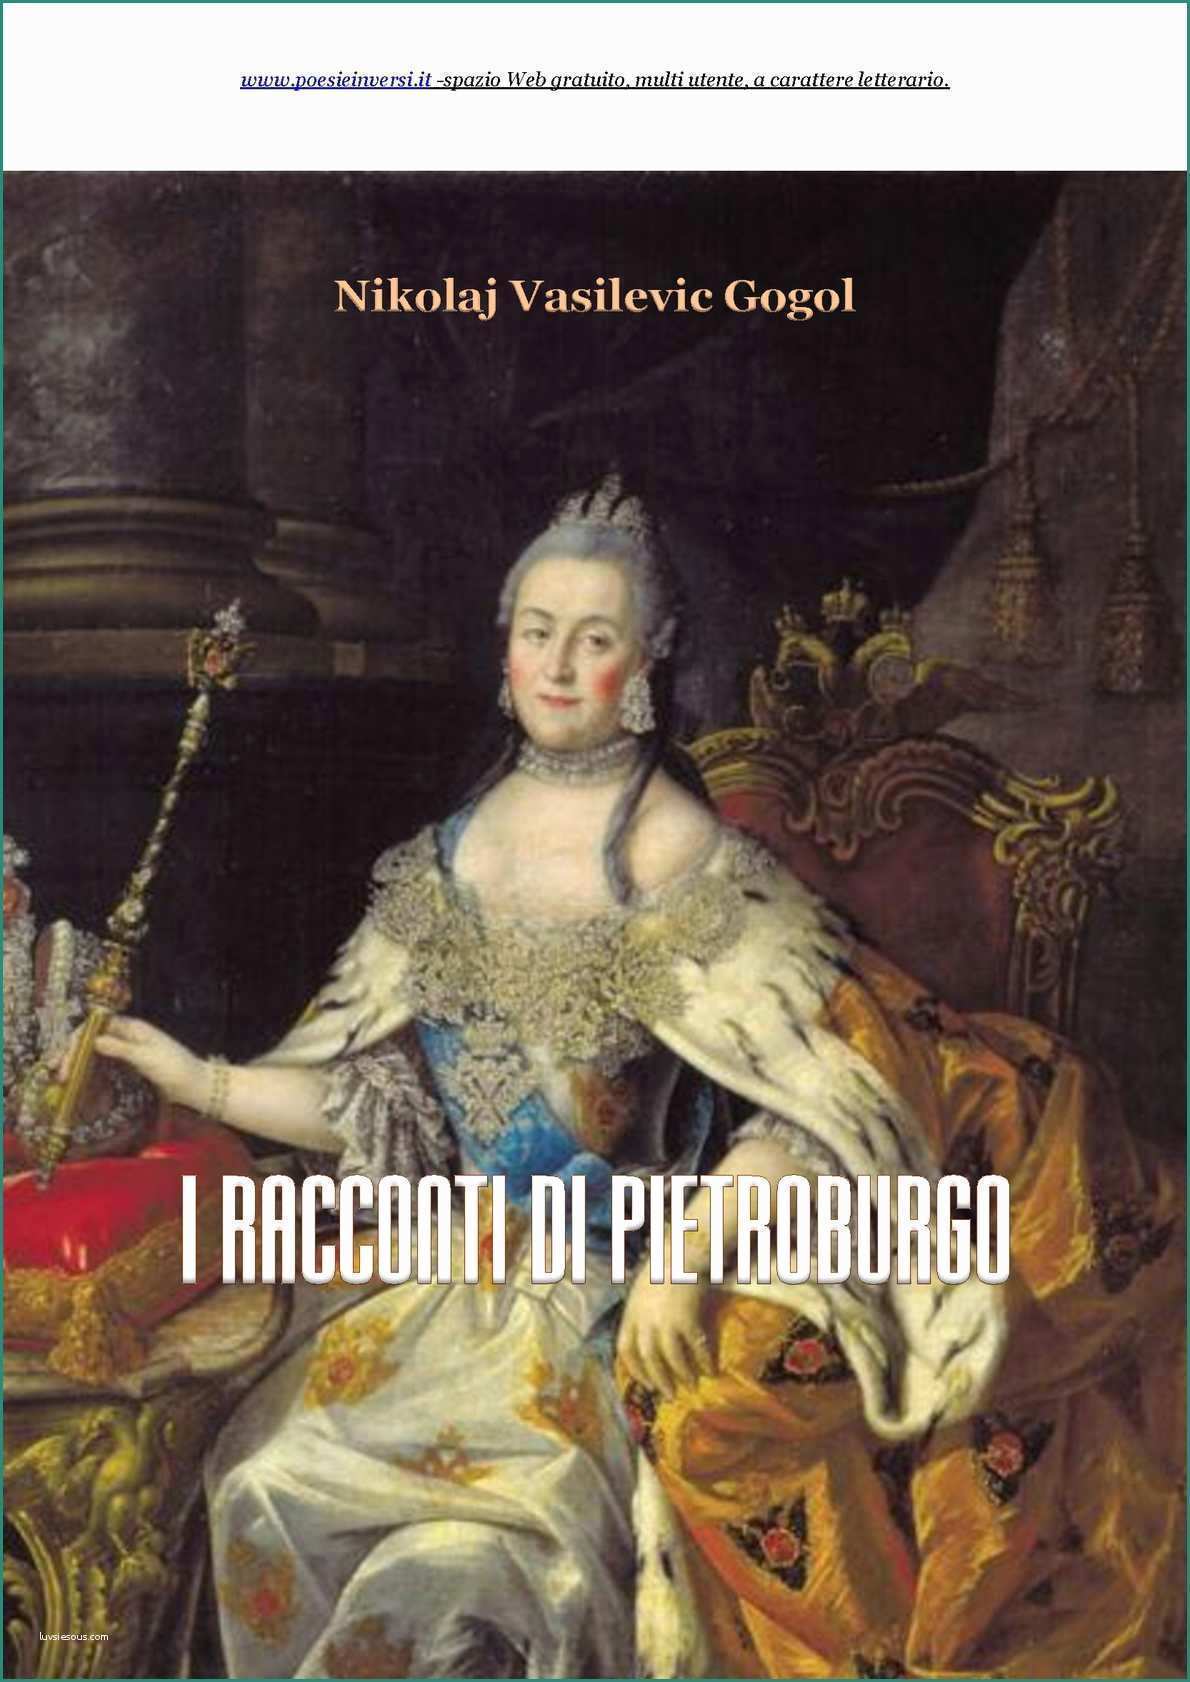 Acqua Vitasnella Residuo Fisso E Calaméo I Racconti Di Pietroburgo Di Nikolaj Vasilevic Gogol